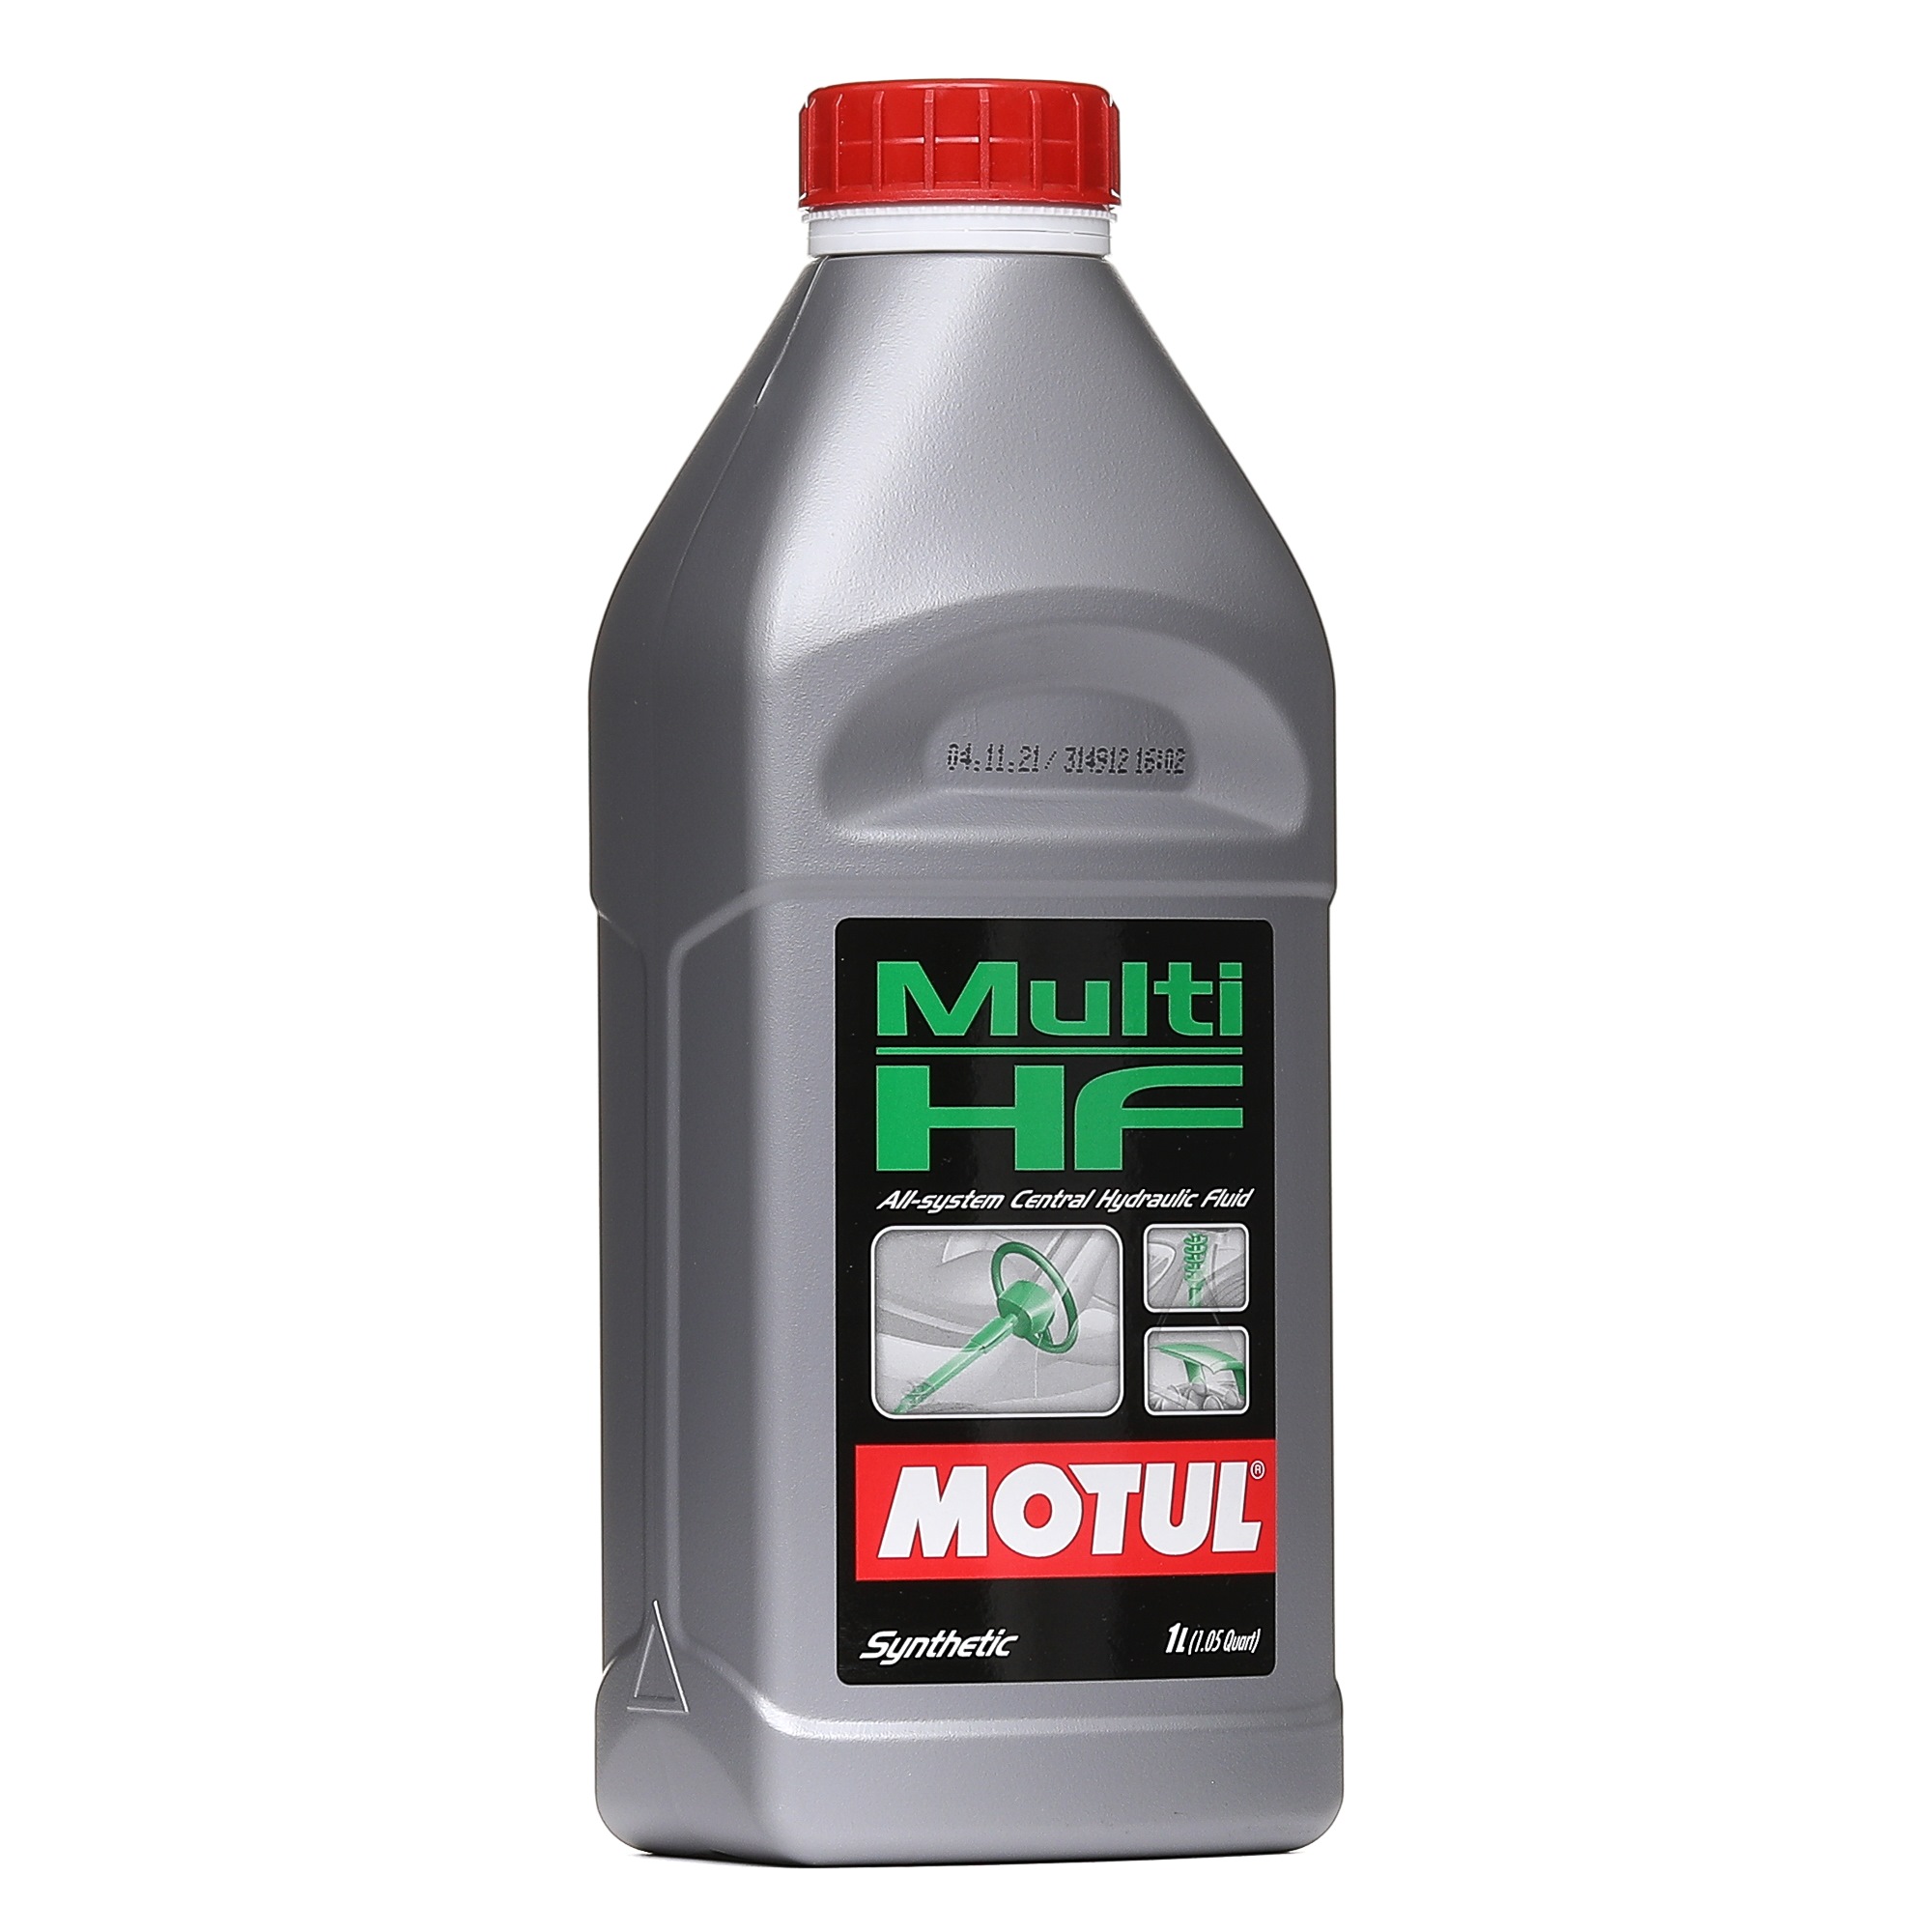 NFZ Hydrauliköl von MOTUL 106399 bestellen